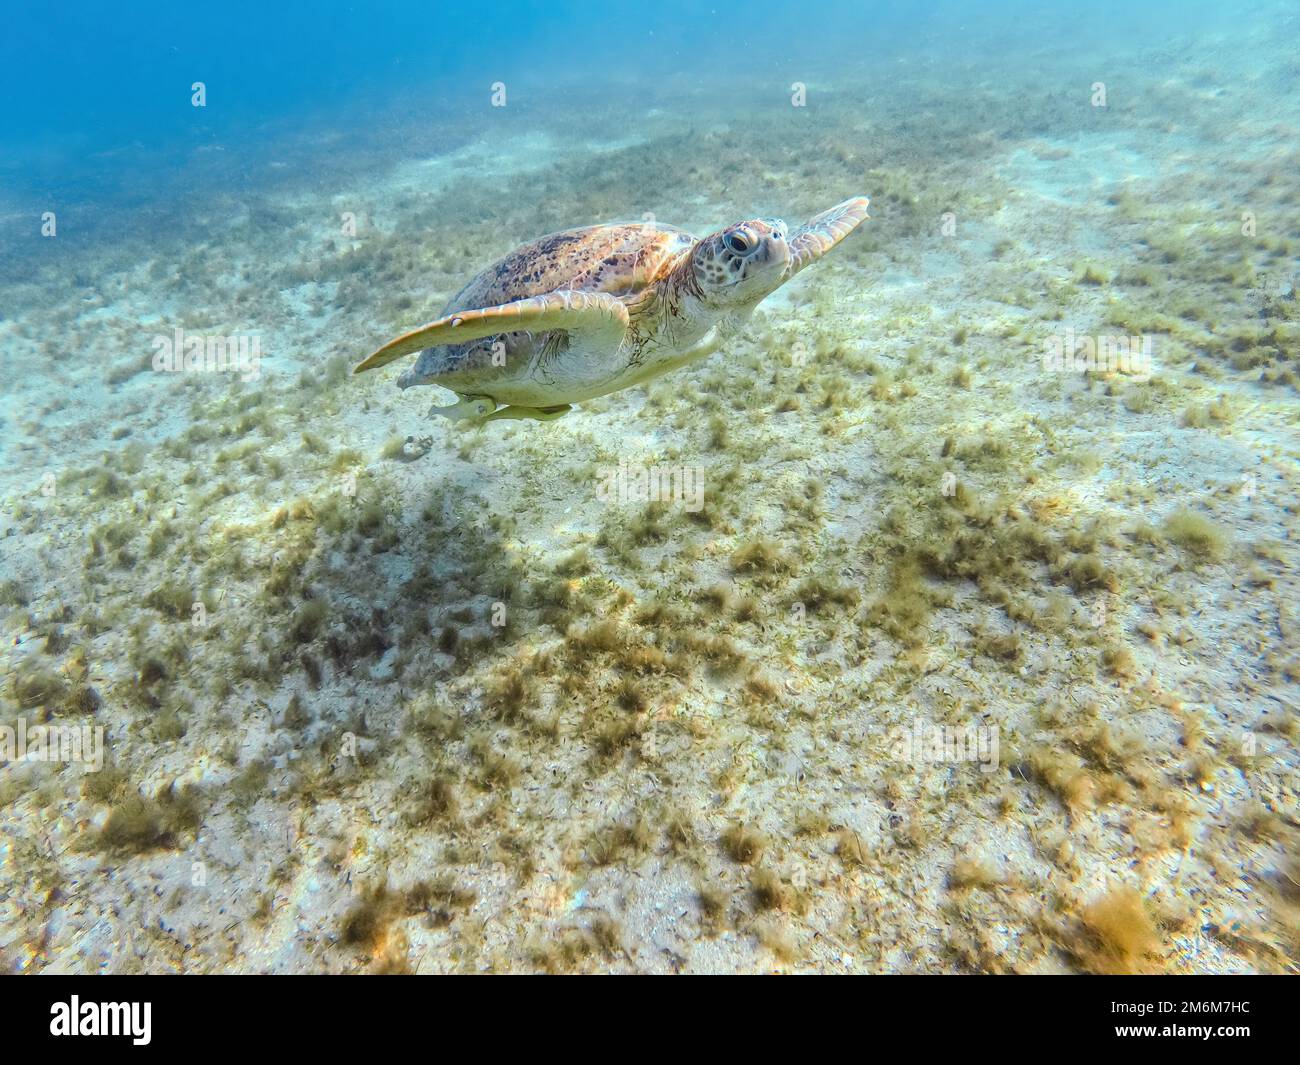 Tortue de mer verte adulte, Chelonia mydas, nagez à Marsa Alam Egypte Banque D'Images